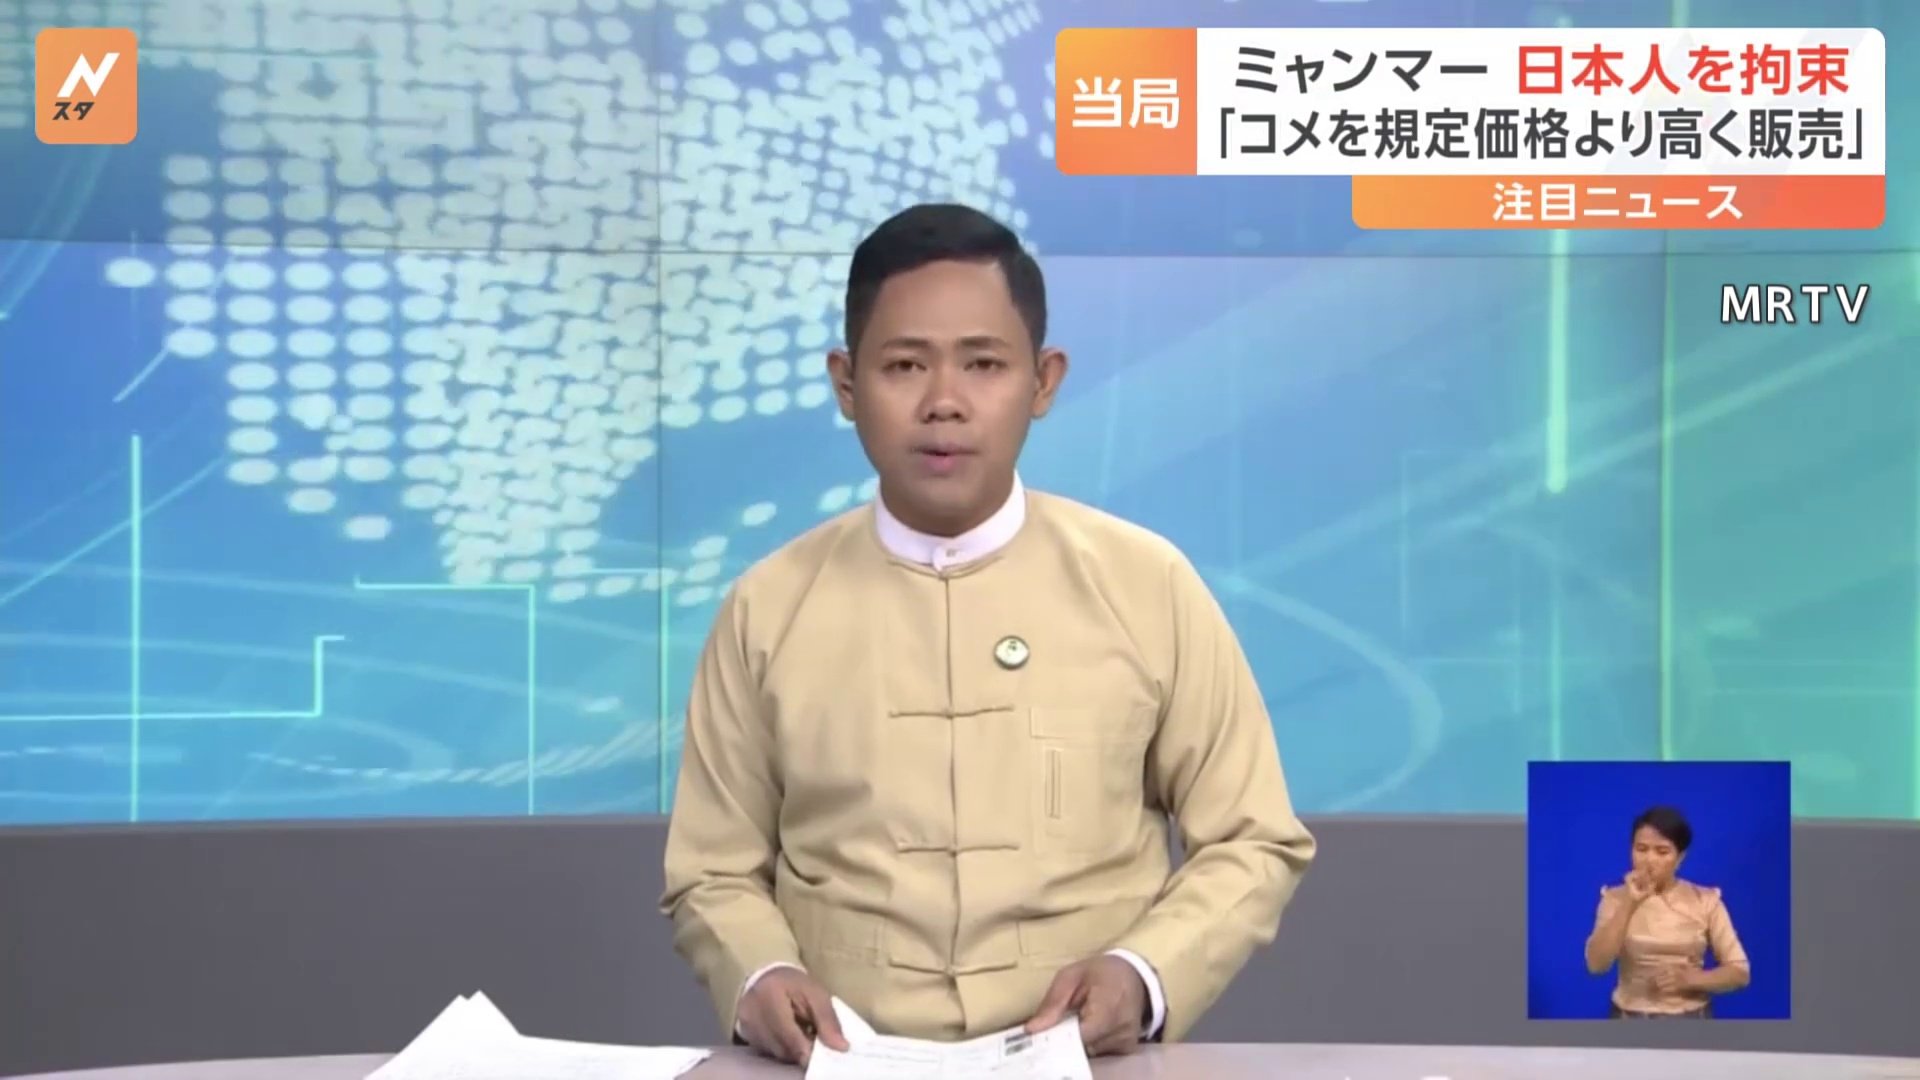 ミャンマー当局が日本人男性を拘束  イオングループの駐在員  軍政「コメを規定値より高く販売」